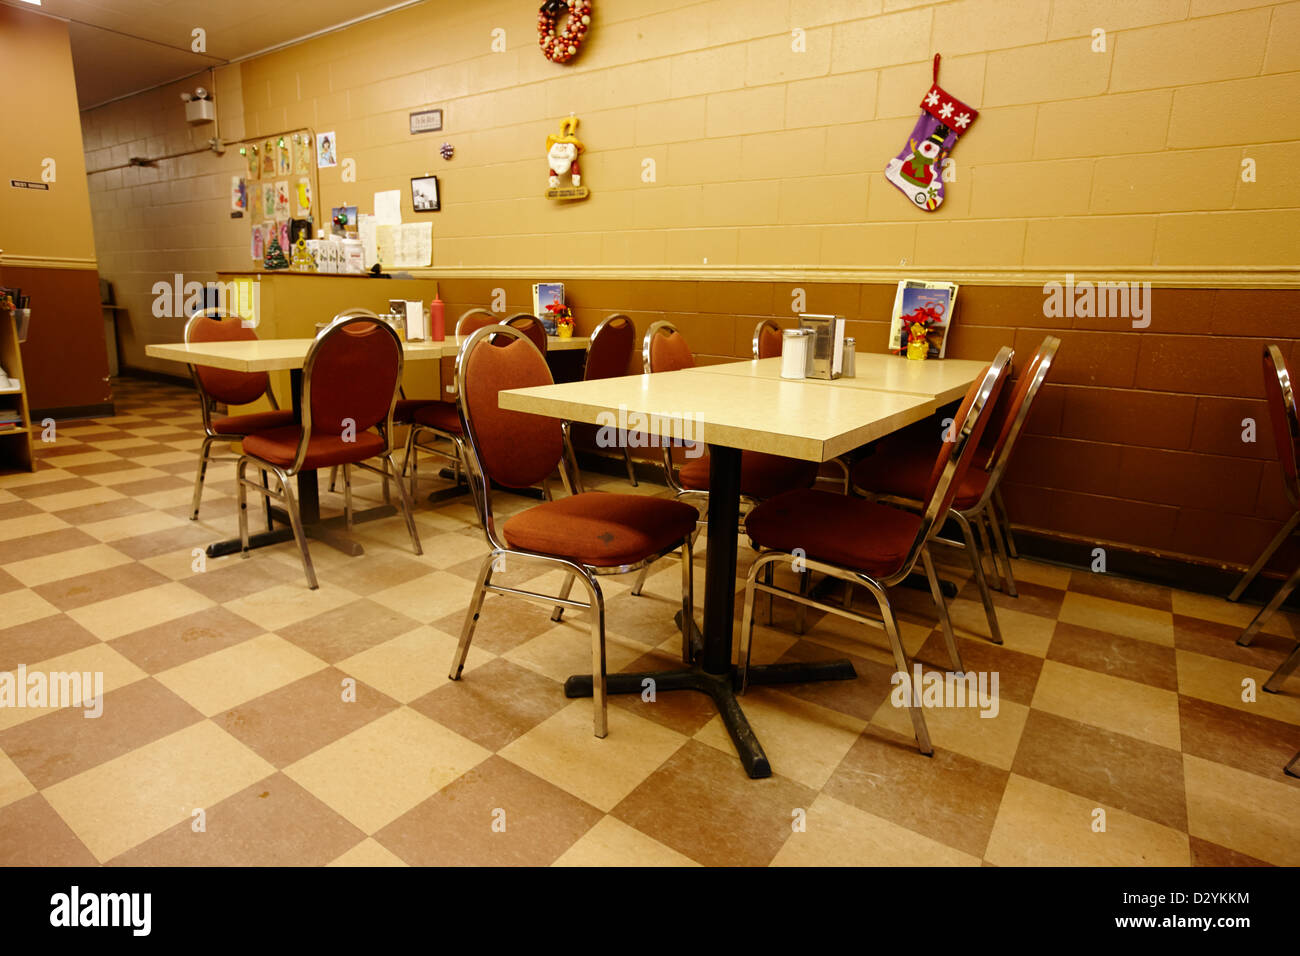 Leere Tabellen in einem kleinen ländlichen Diner-Café in einer Stadt Saskatchewan Kanada Stockfoto